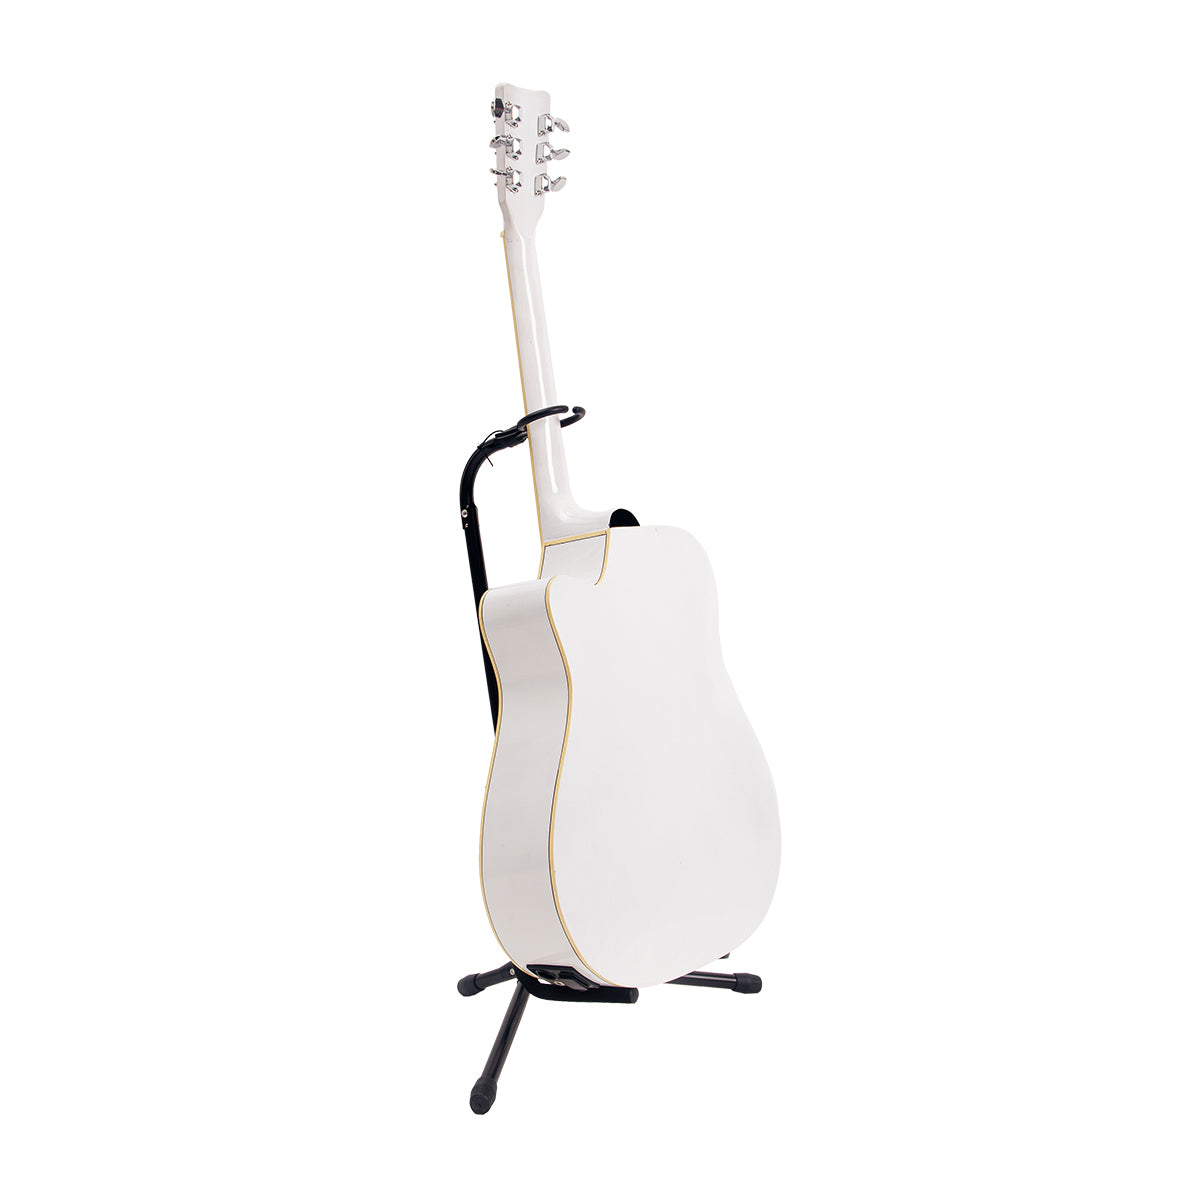 gitar semi akustik white/putih mandalika jw-01 wh tuner lc